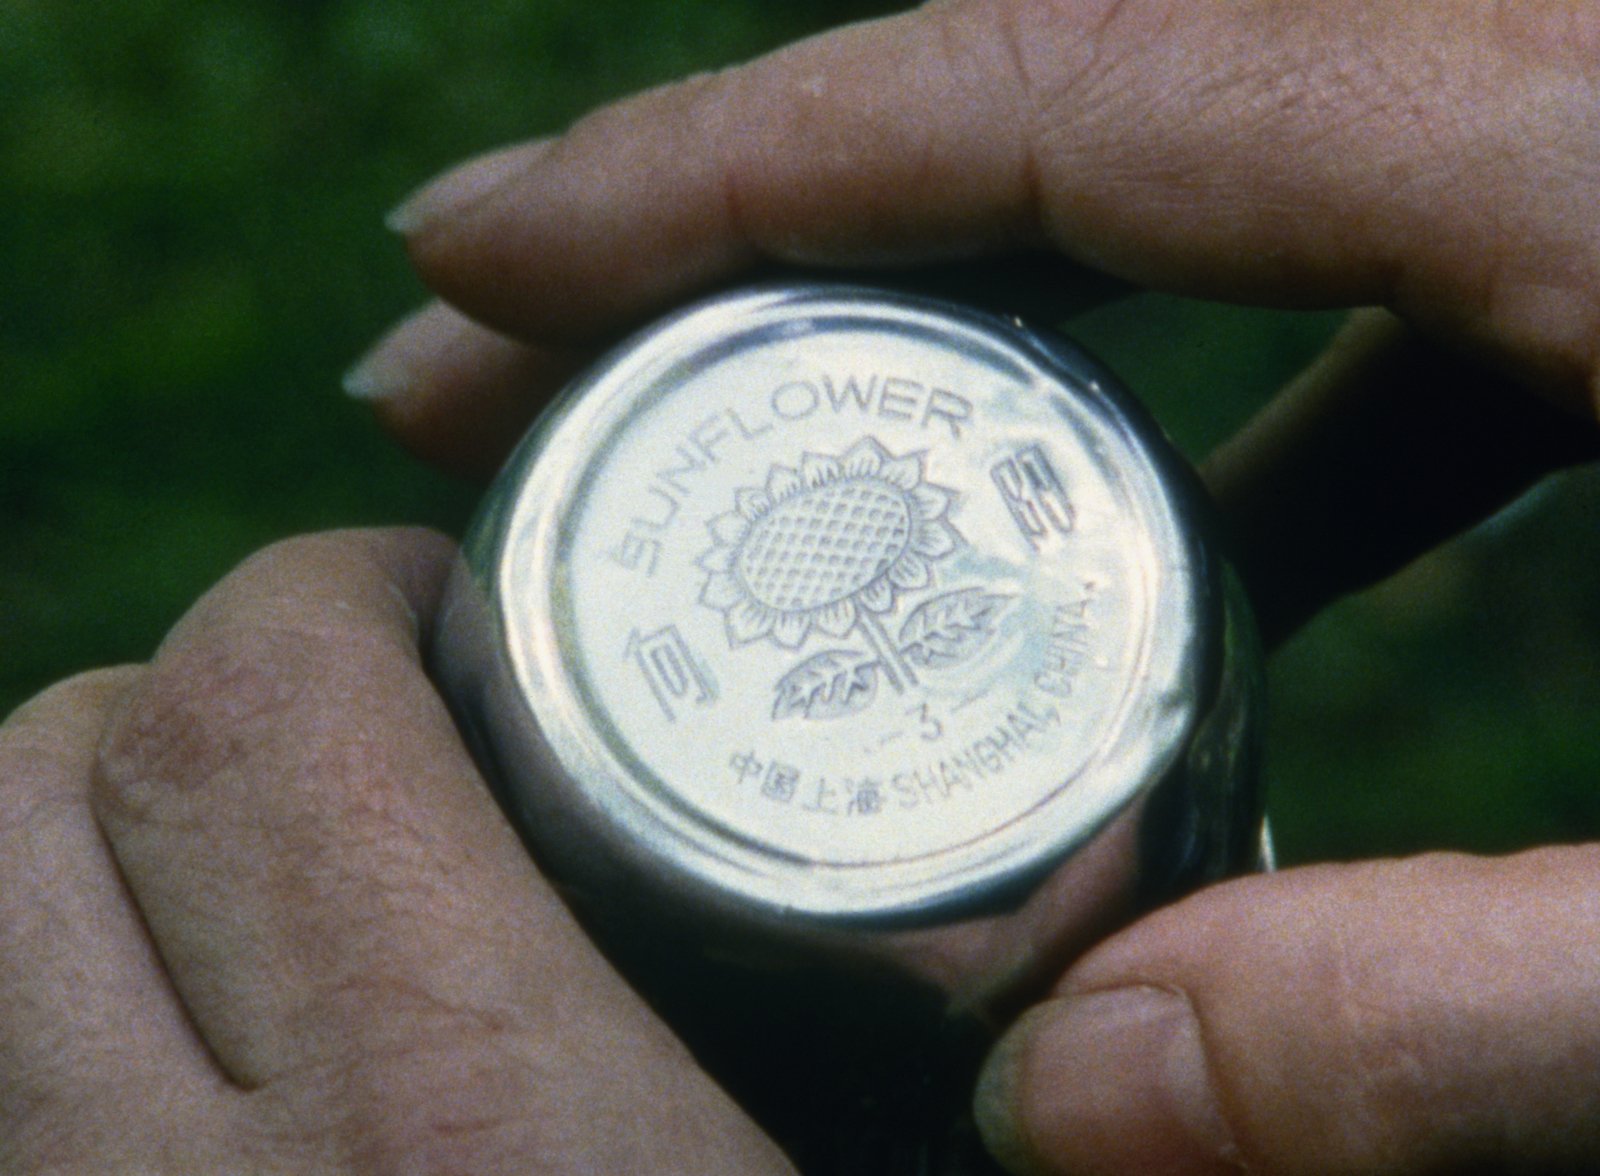 Родни Грэм. Фонокинетоскоп. 2001Фильм на 16-мм пленке (5 мин.), проигрыватель, виниловая пластинкаКоллекция Рингир, Швейцария